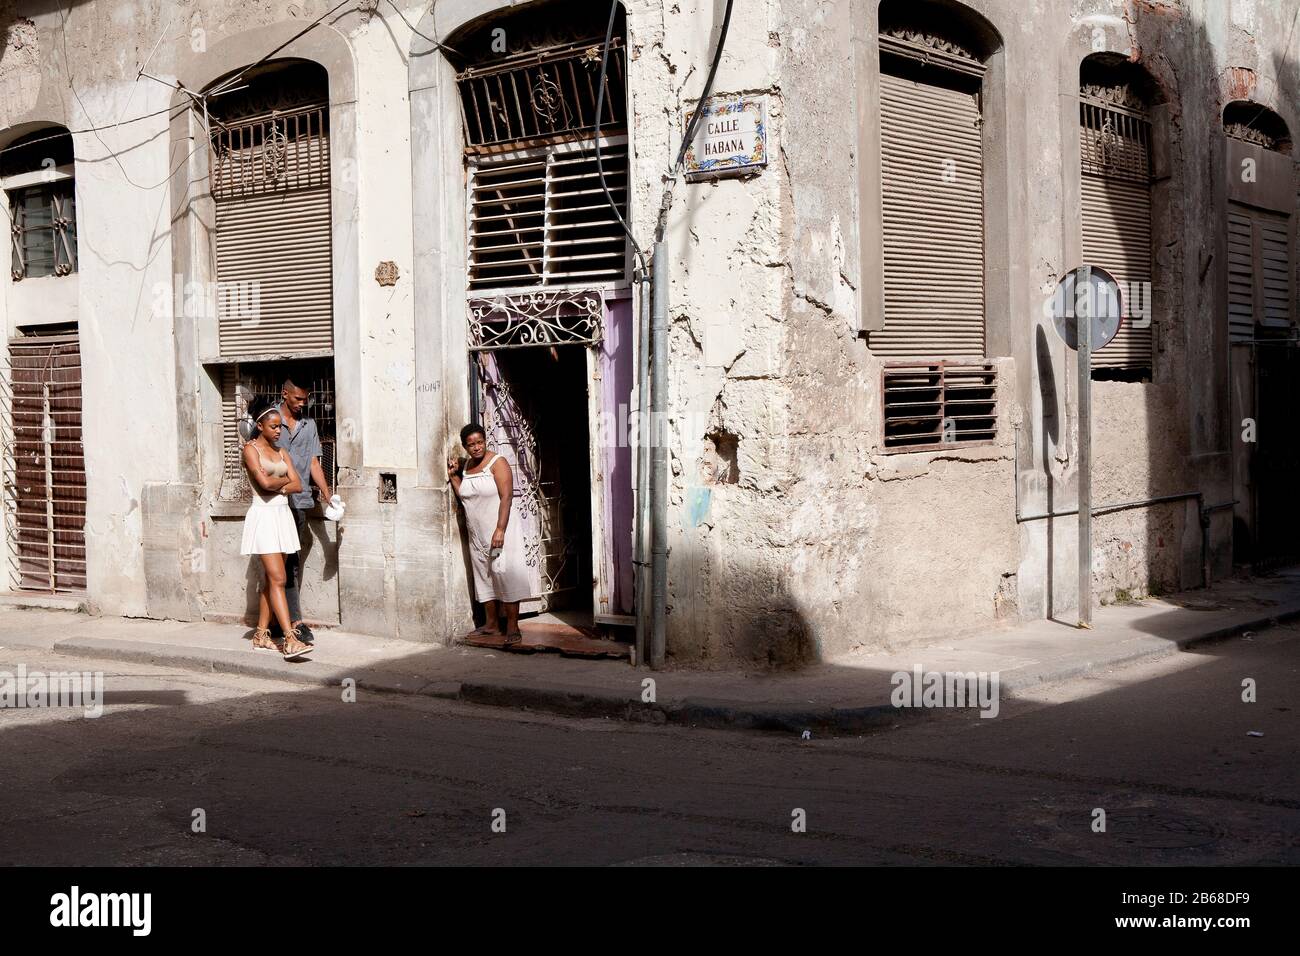 Les habitants de la rue cubaine un jour ensoleillé Banque D'Images